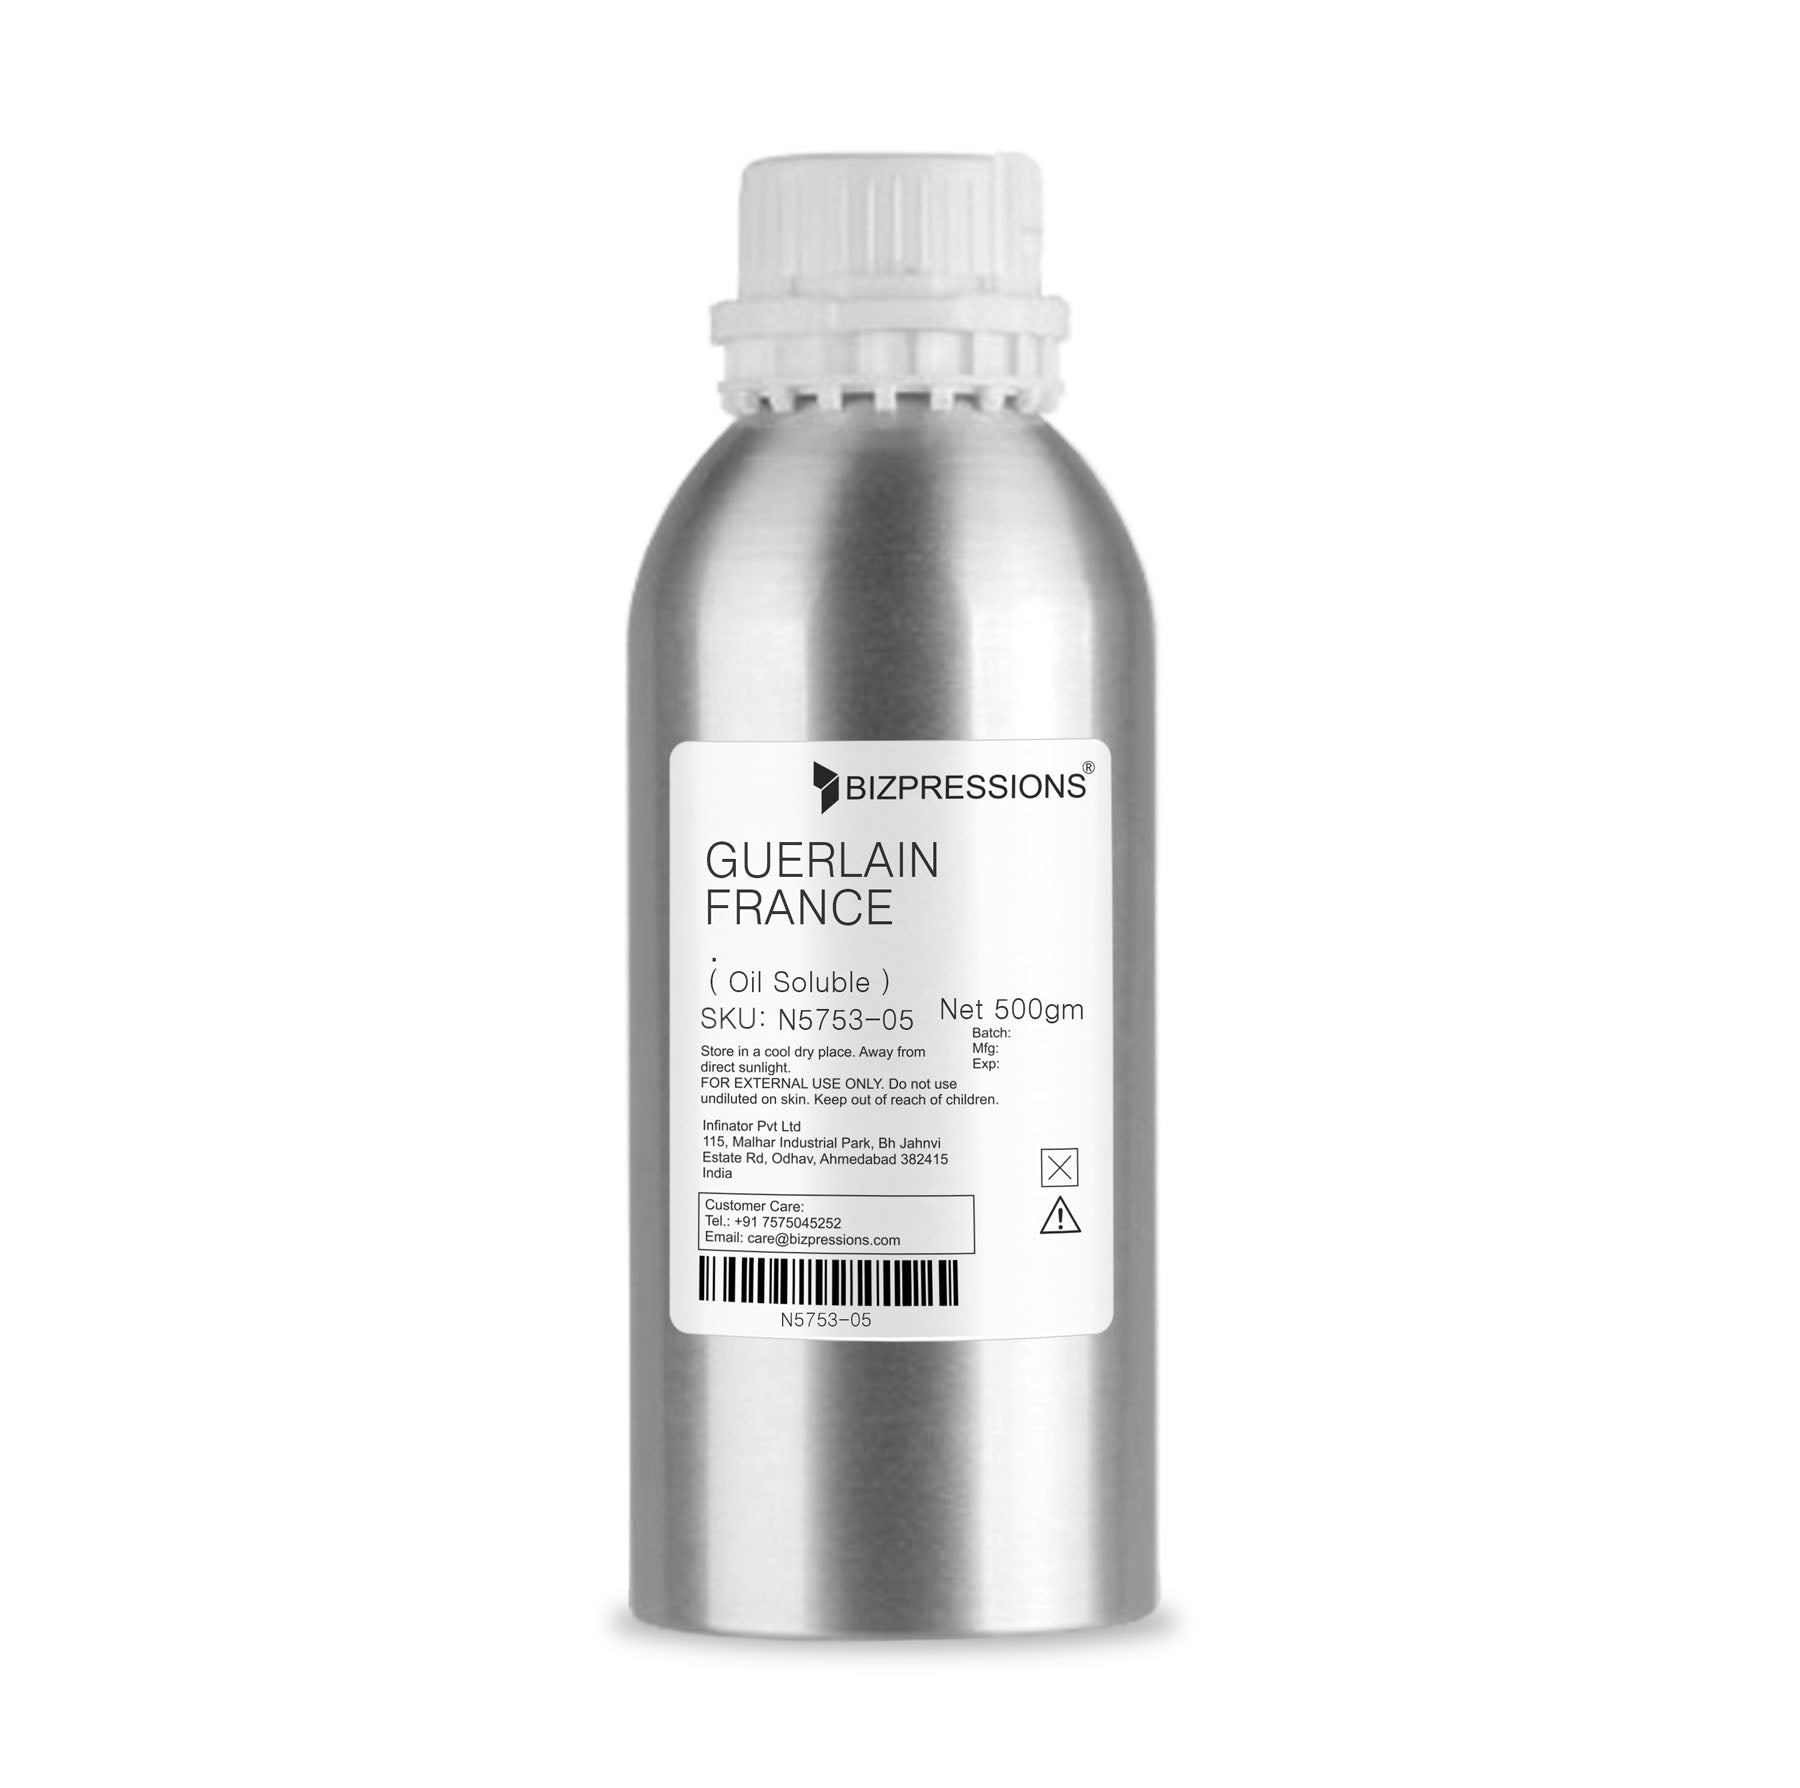 GUERLAIN FRANCE - Fragrance ( Oil Soluble ) - 500 gm